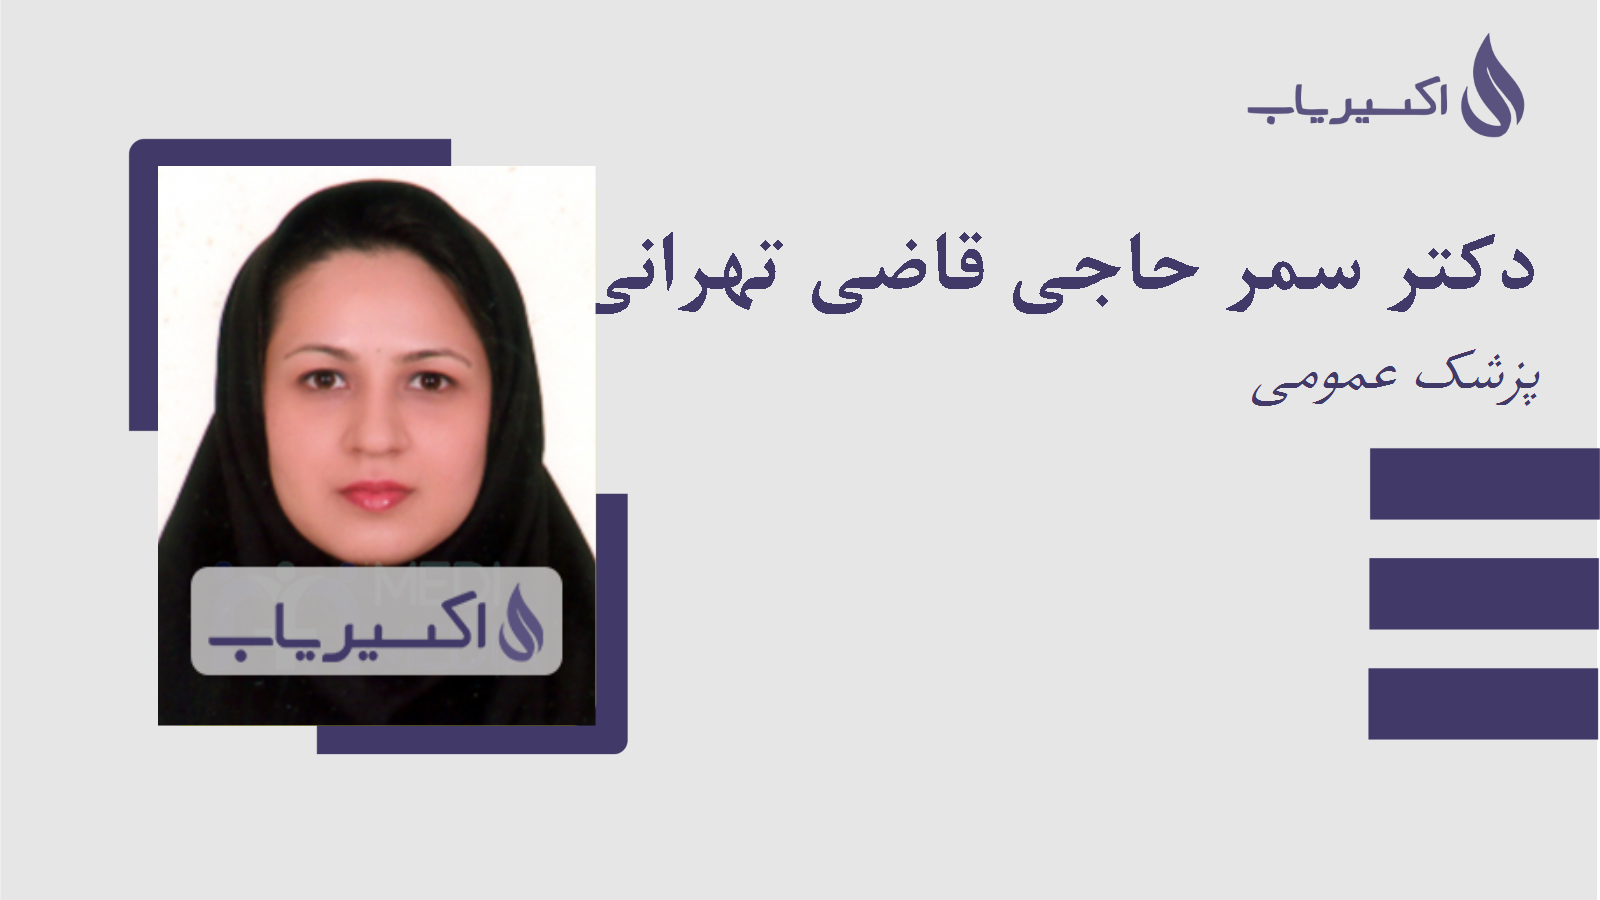 مطب دکتر سمر حاجی قاضی تهرانی